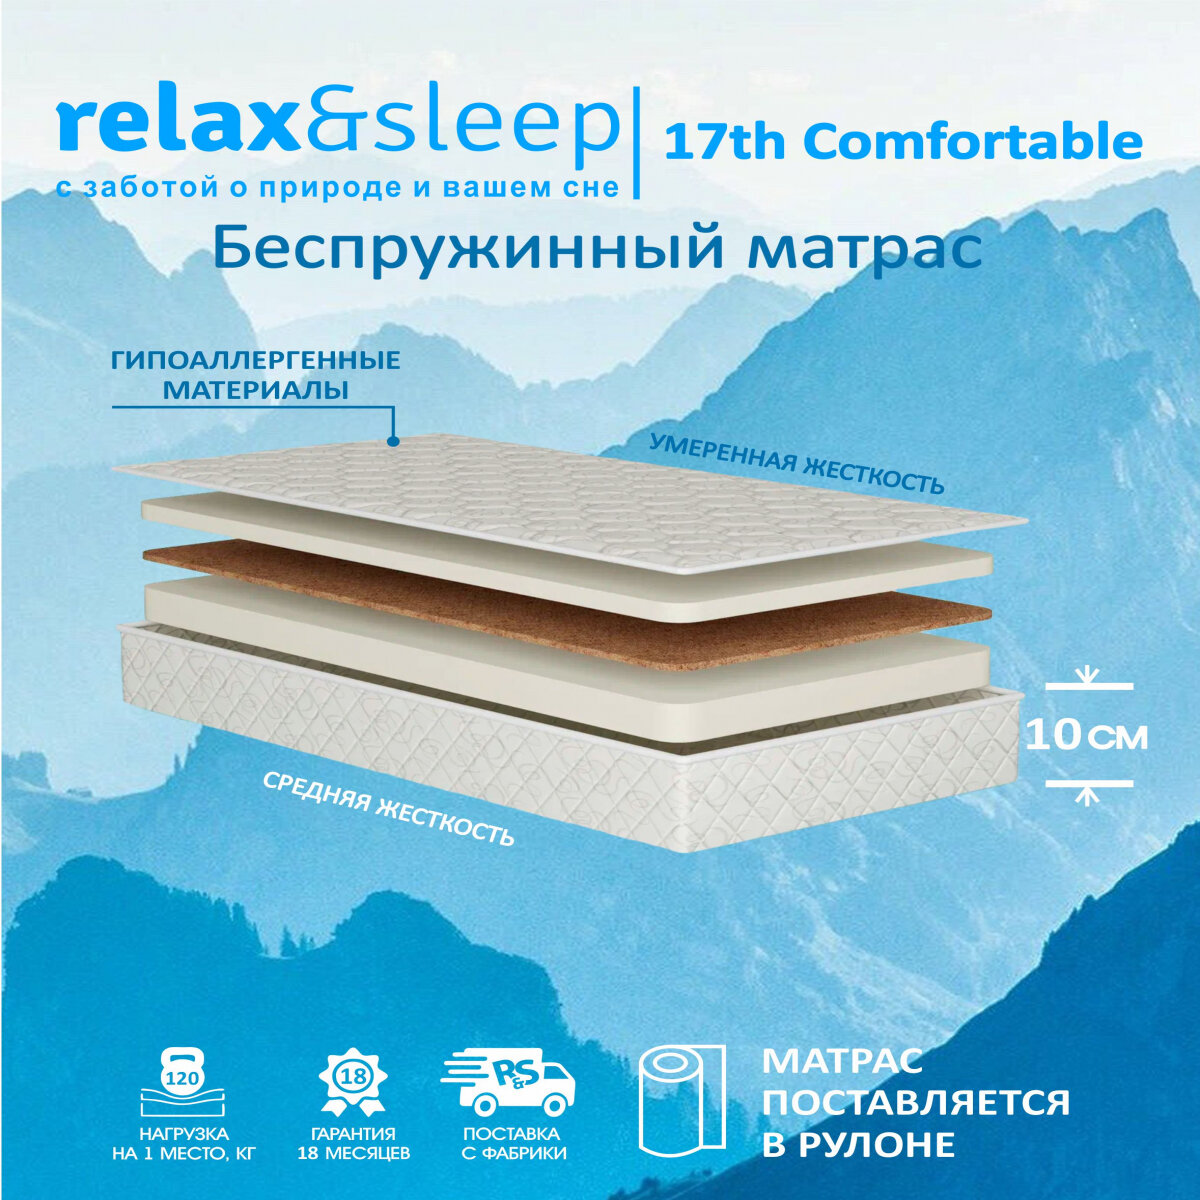 Матрас Relax&Sleep ортопедический беспружинный, топпер 17h Comfortable (80 / 200)